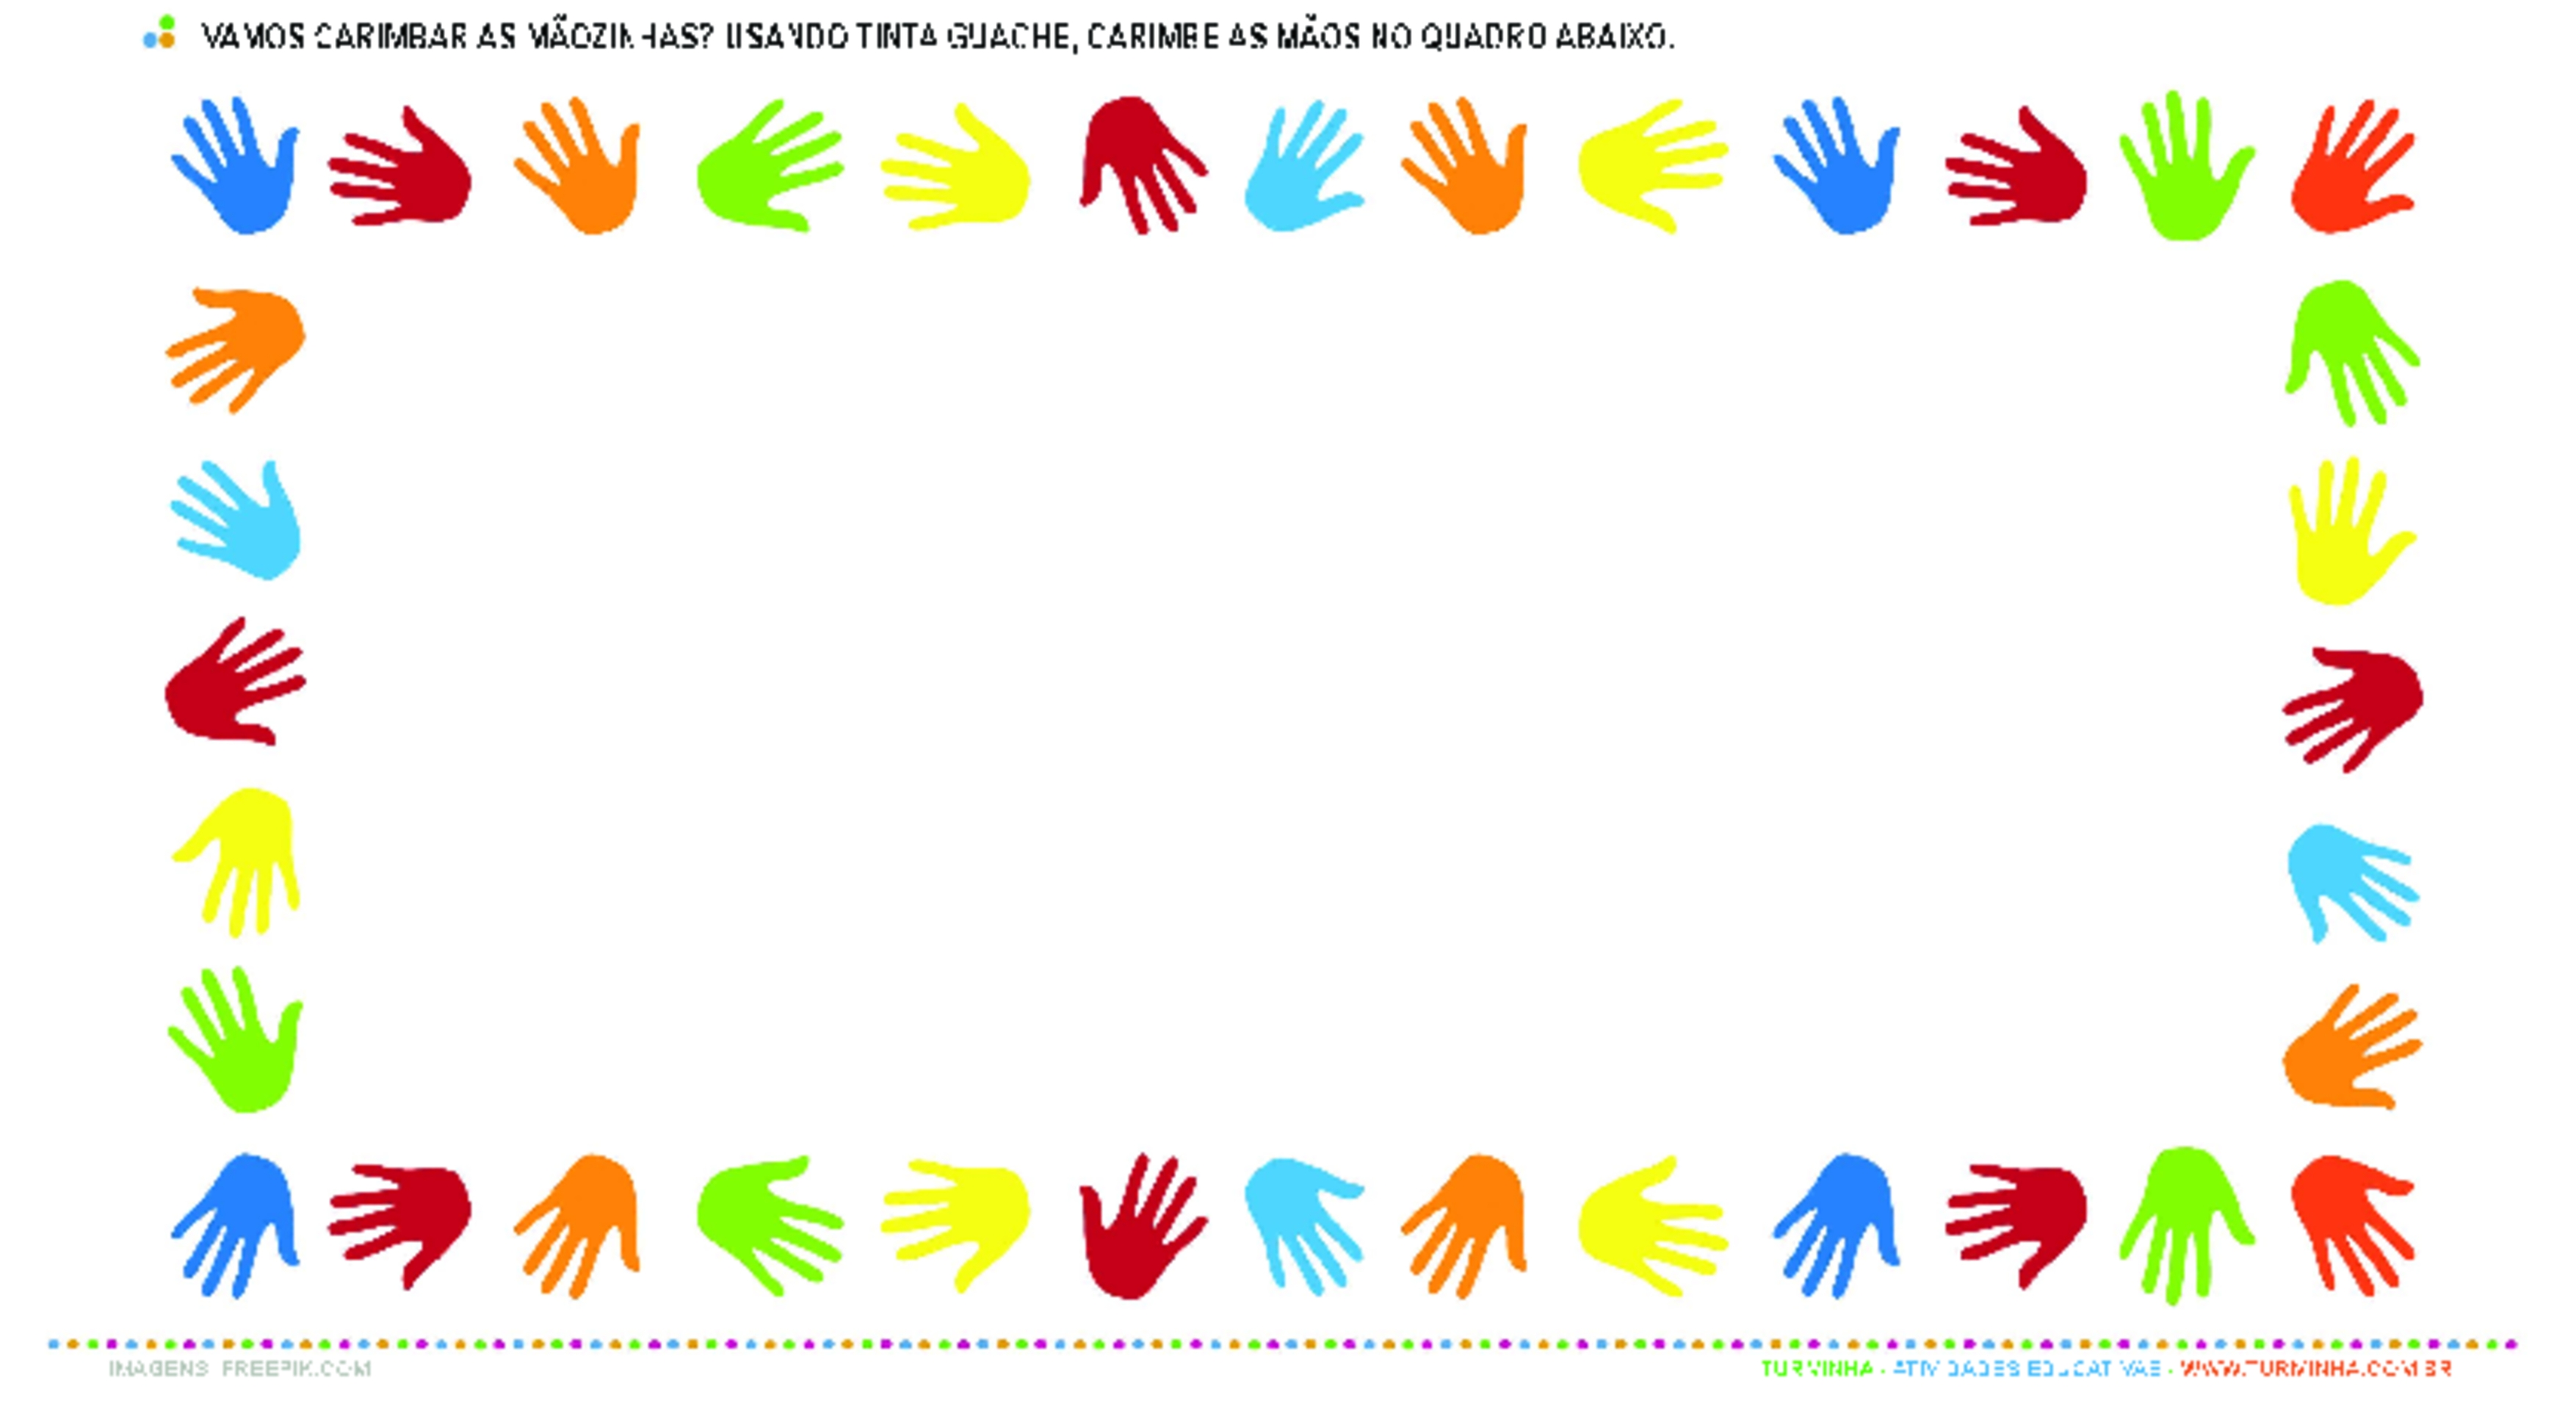 Carimbando as Mãos - Atividade Educativa para Creche (0 a 3 anos)